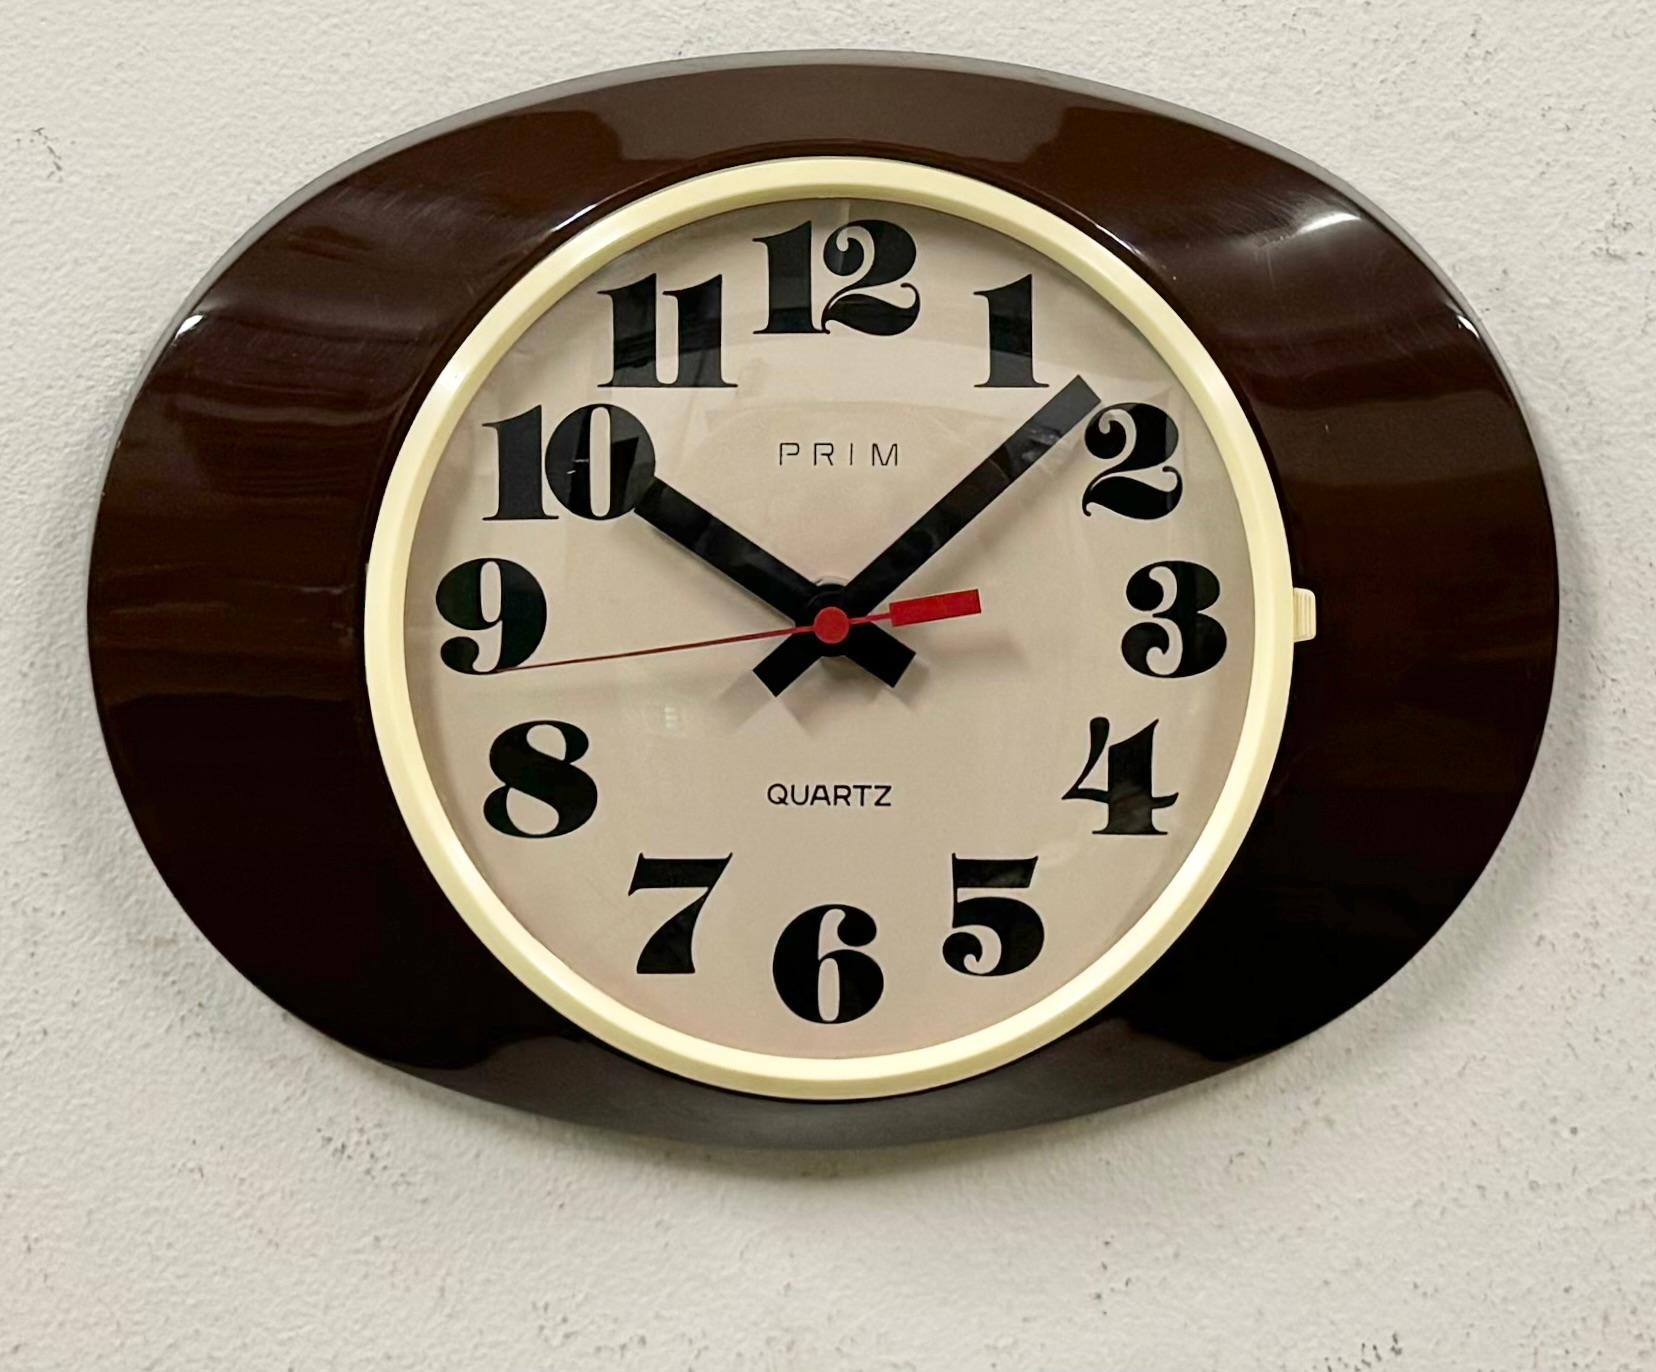 Cette horloge murale vintage en bakélite a été fabriquée par Prim dans l'ancienne Tchécoslovaquie dans les années 1970-1980. Whiting présente un corps en bakélite brune, un cadran en bakélite blanche et un couvercle en verre transparent convexe. Le